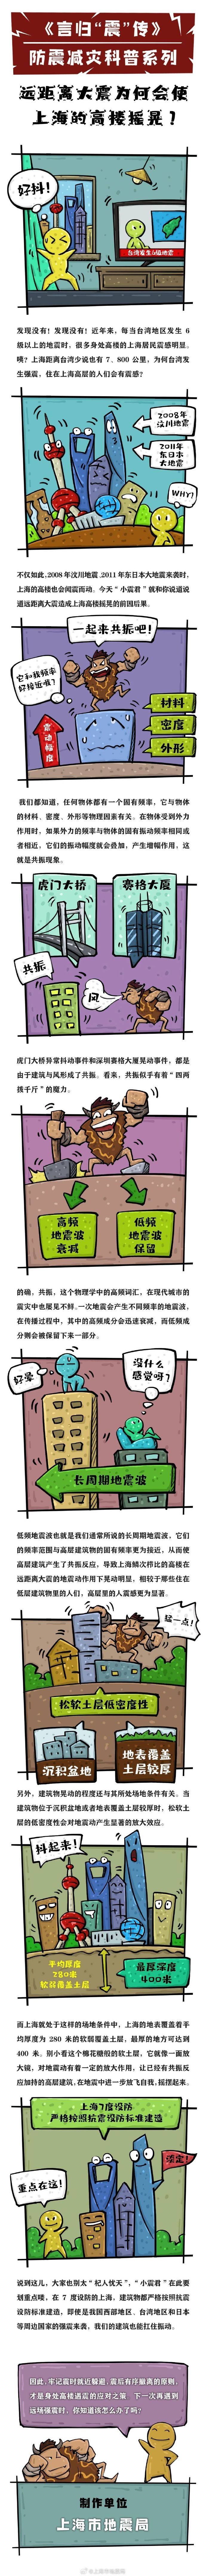 上海市地震局的微博，台湾地区发生中强地震，上海市地震局详解，高层建筑受影响的可能性及应对措施